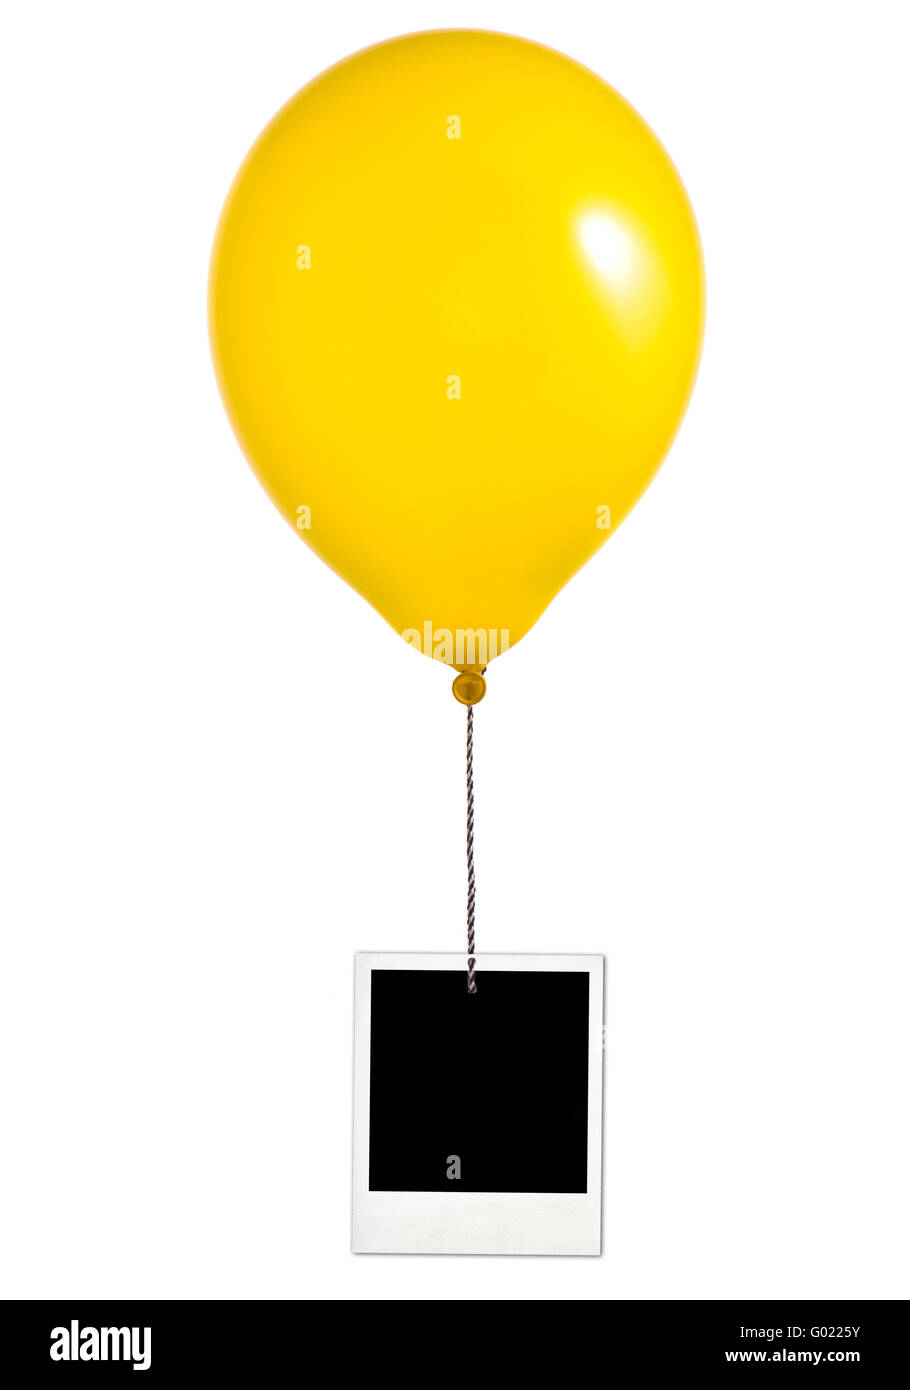 Yellow balloon and photo frame on white background Stock Photo